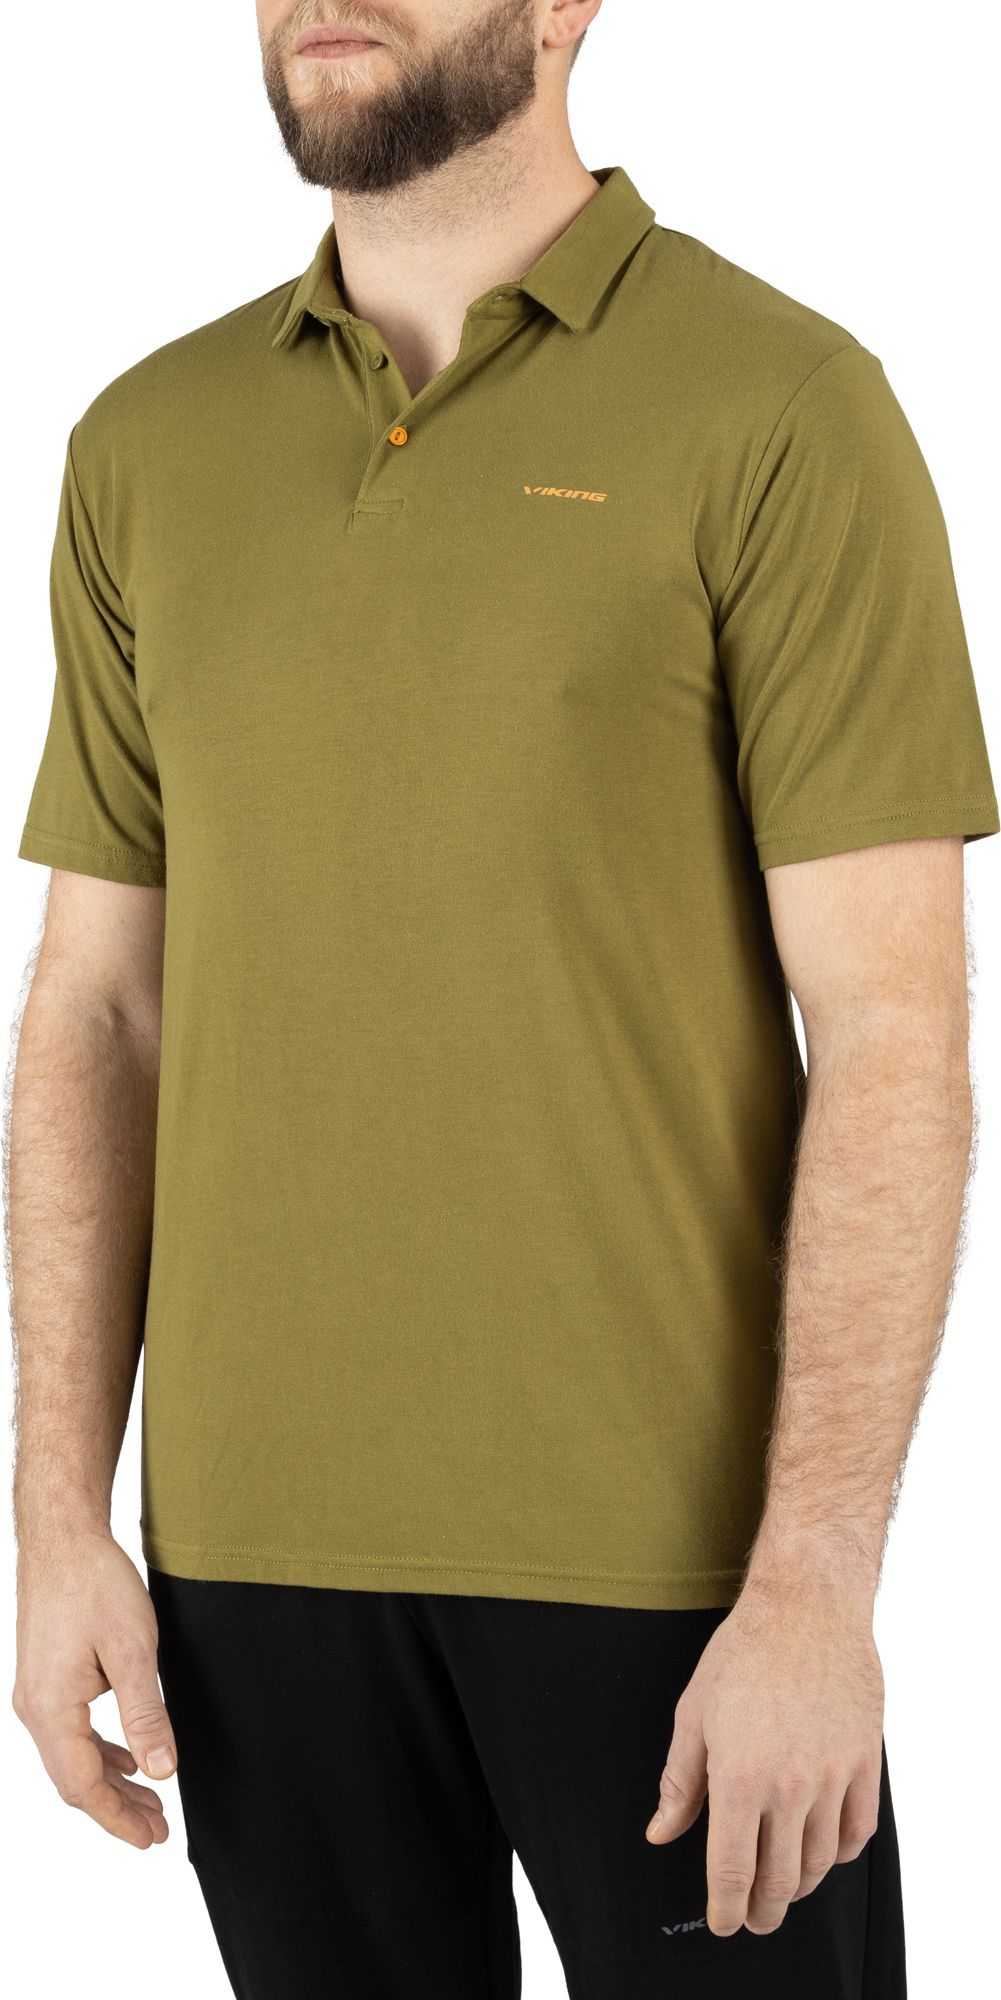 Pánské tričko s límečkem VIKING Winslow zelená Velikost: M